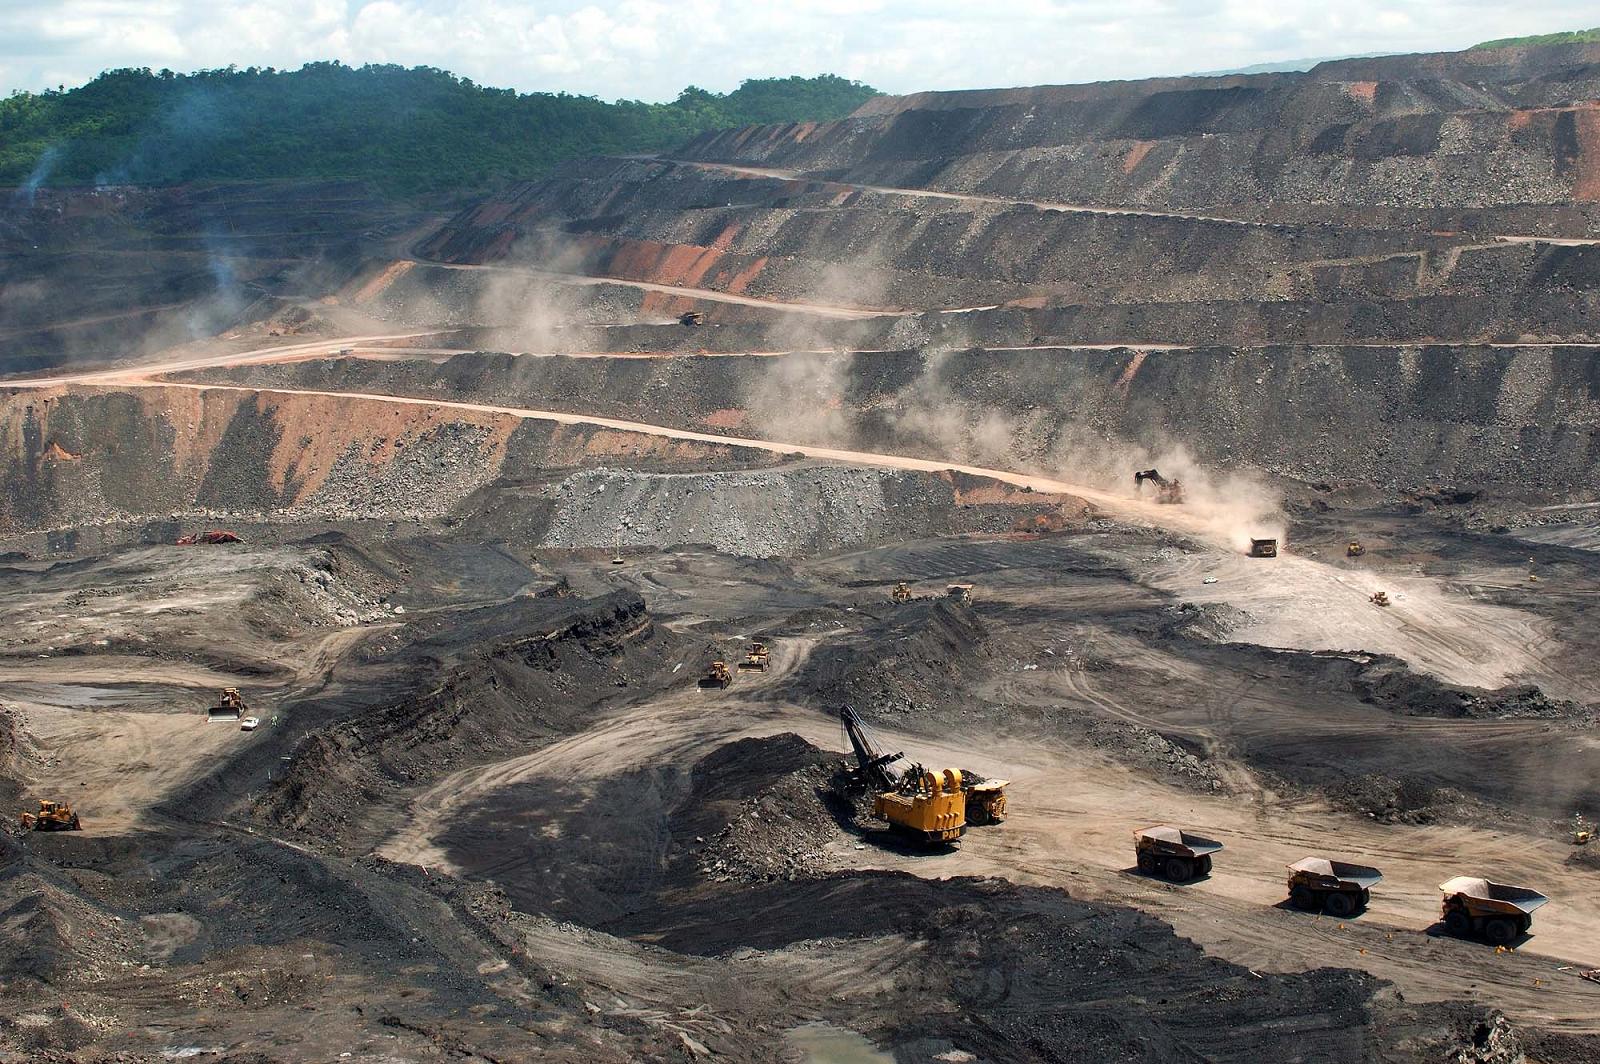 De Soto: Valor de reservas minerales  bloqueadas es de US$ 800,000 millones